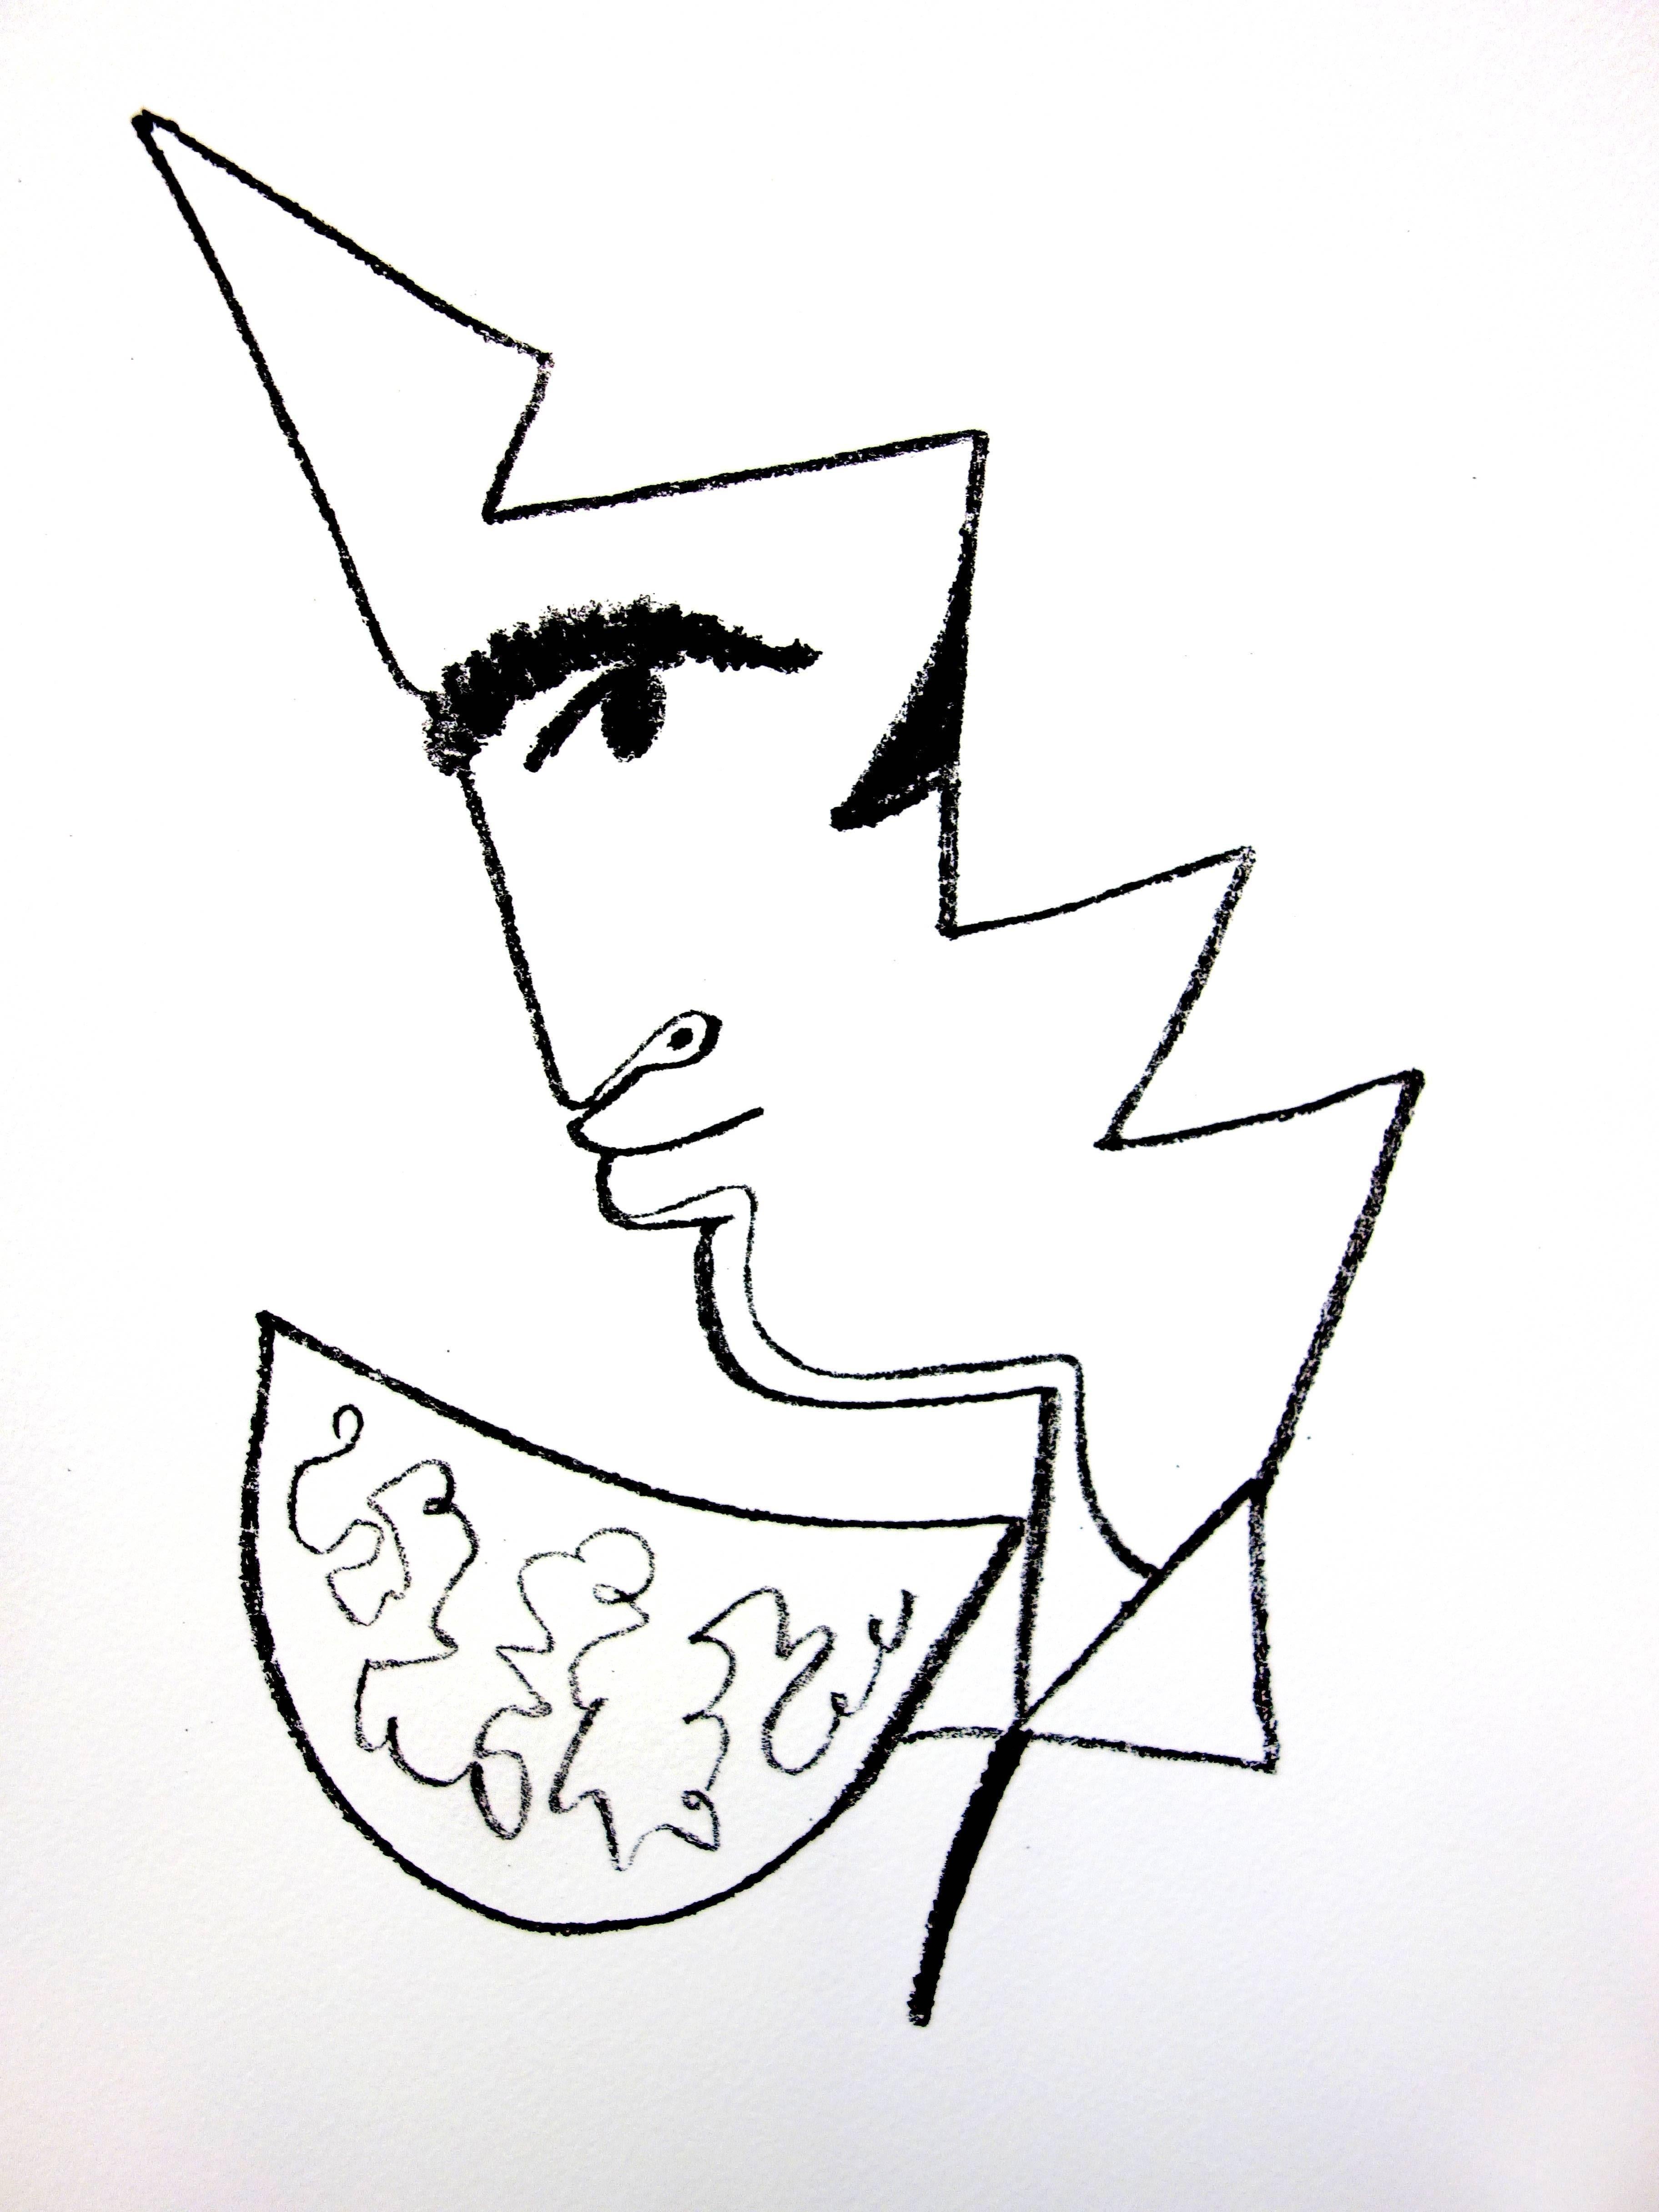 Original-Lithographie von Jean Cocteau
Titel: Taureaux
In der Platte signiert
Abmessungen: 40 x 30 cm
Auflage: 200
Luxuriöse Printausgabe aus dem Portfolio von Trinckvel
1965

Jean Cocteau

Der Schriftsteller, Künstler und Filmregisseur Jean Cocteau